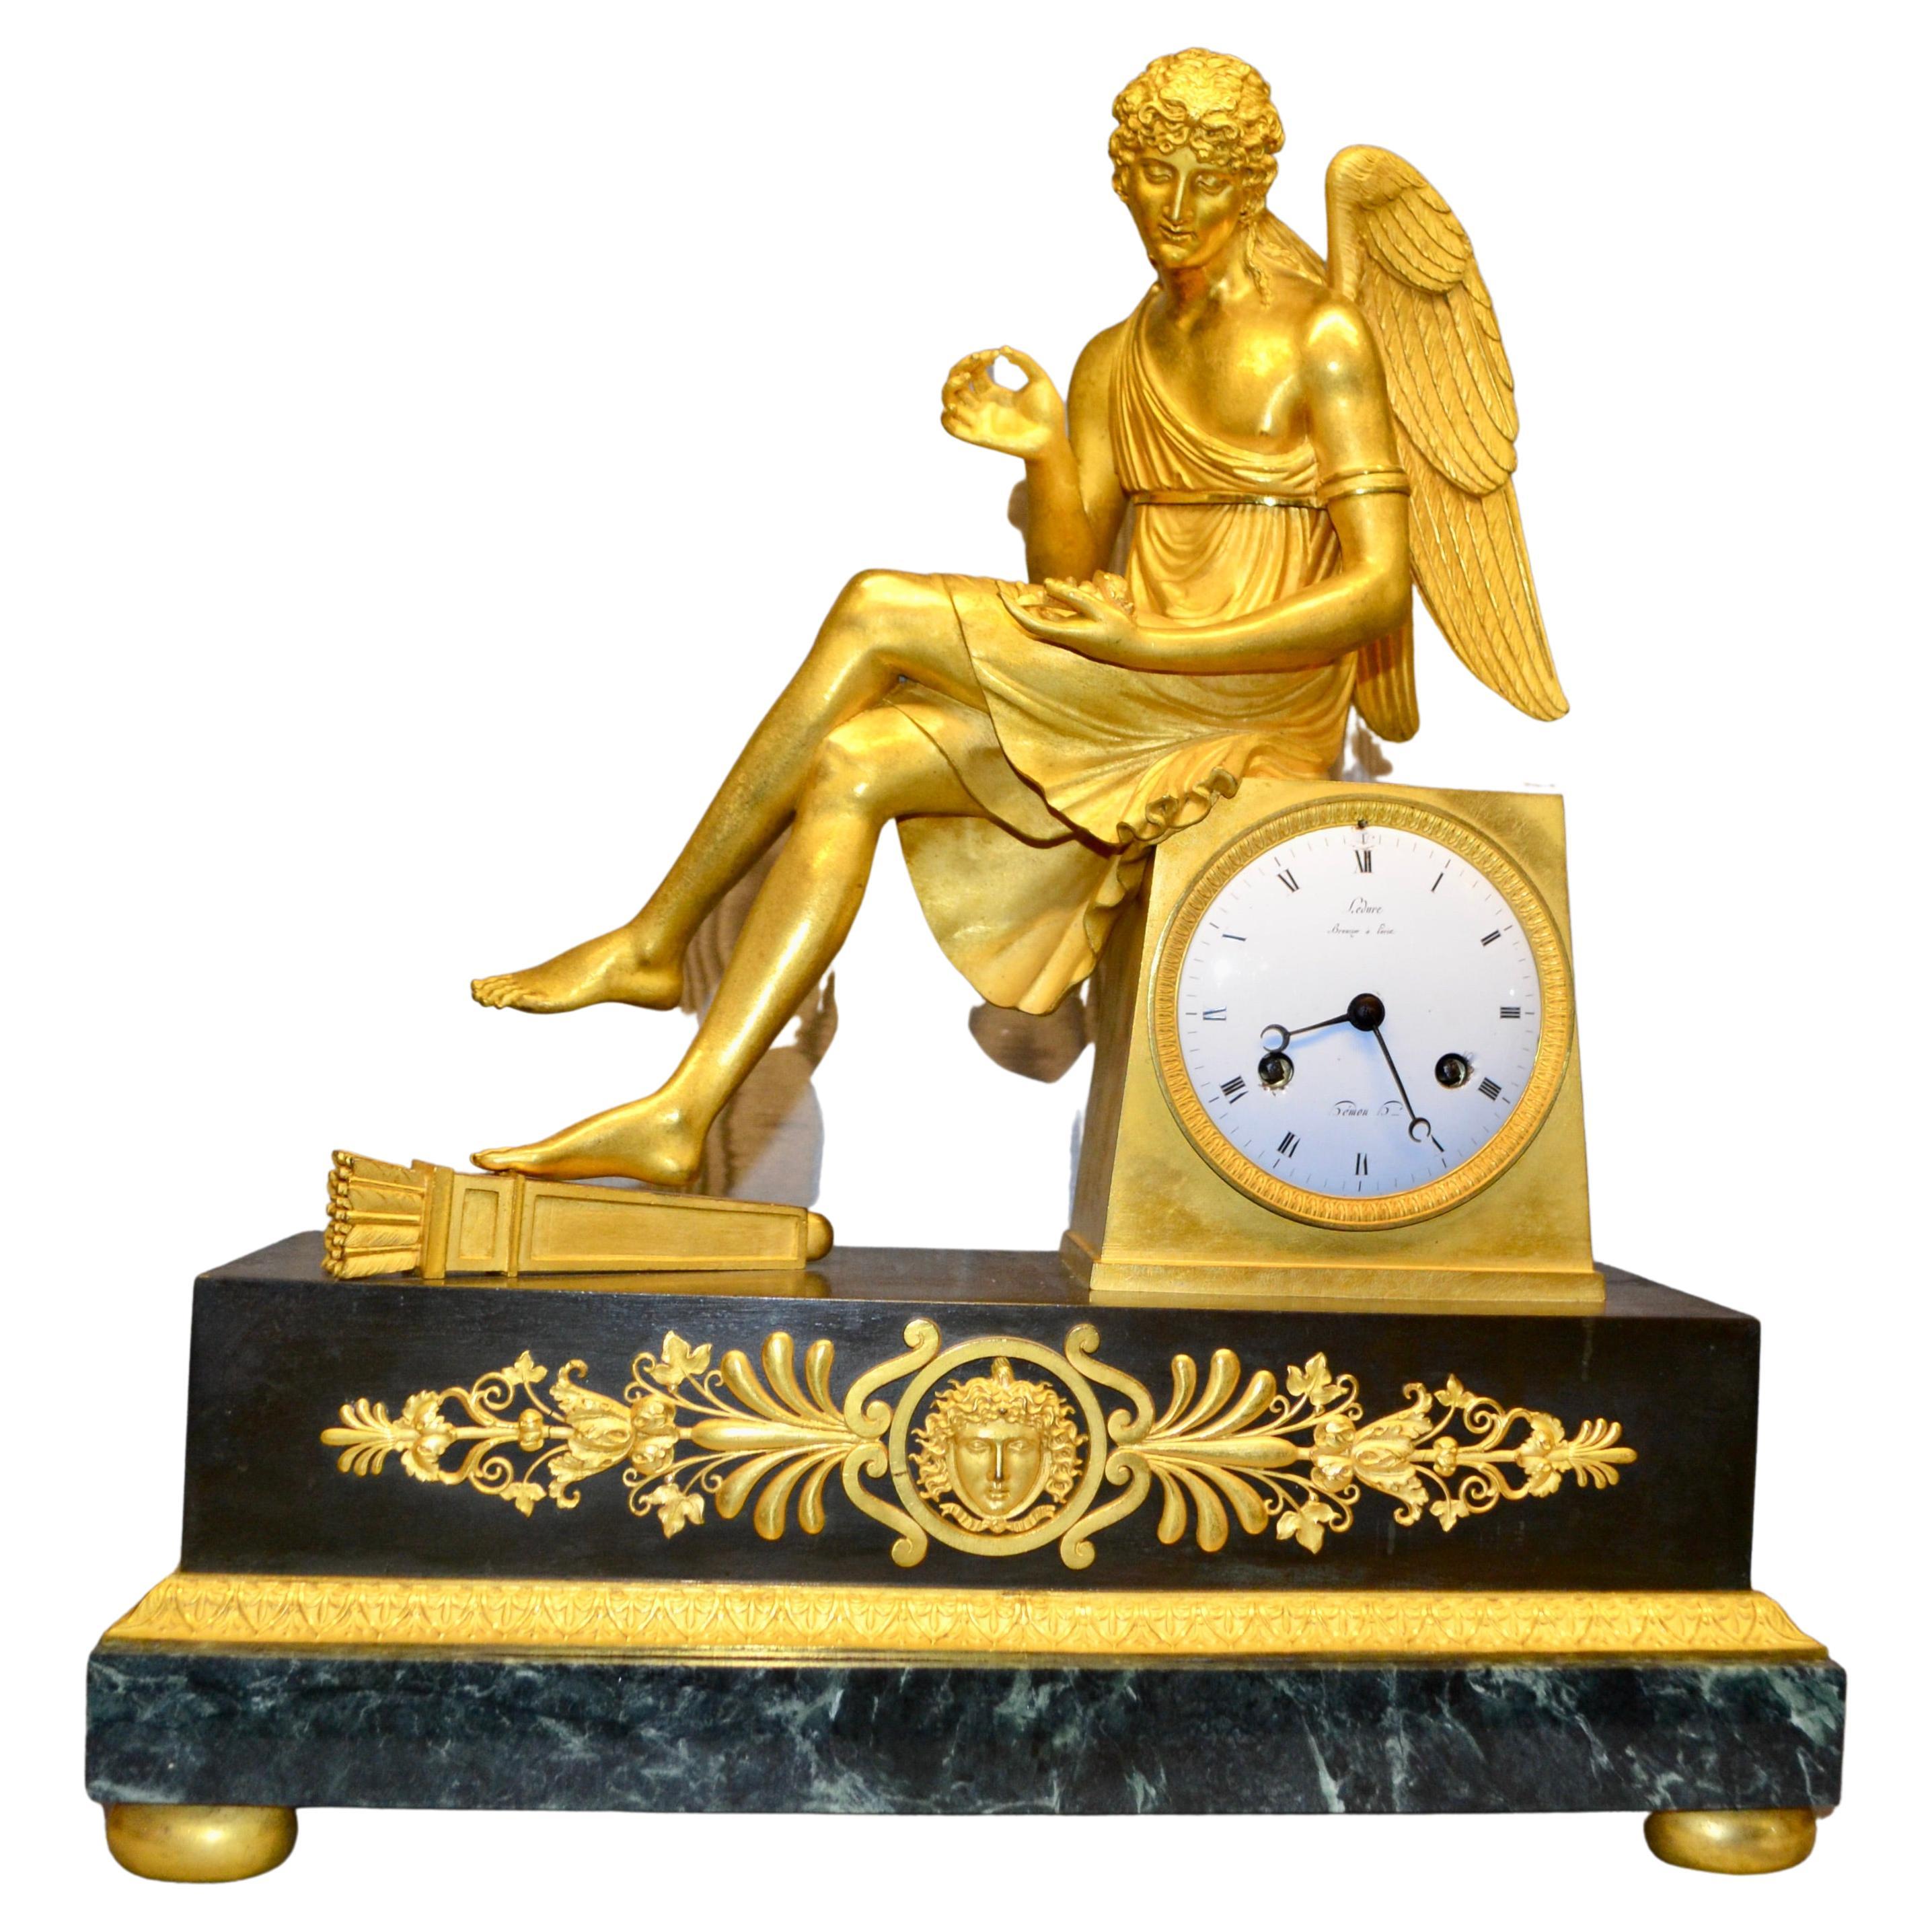 Horloge Empire française en bronze doré et marbre représentant Cupidon assis tenant une rose